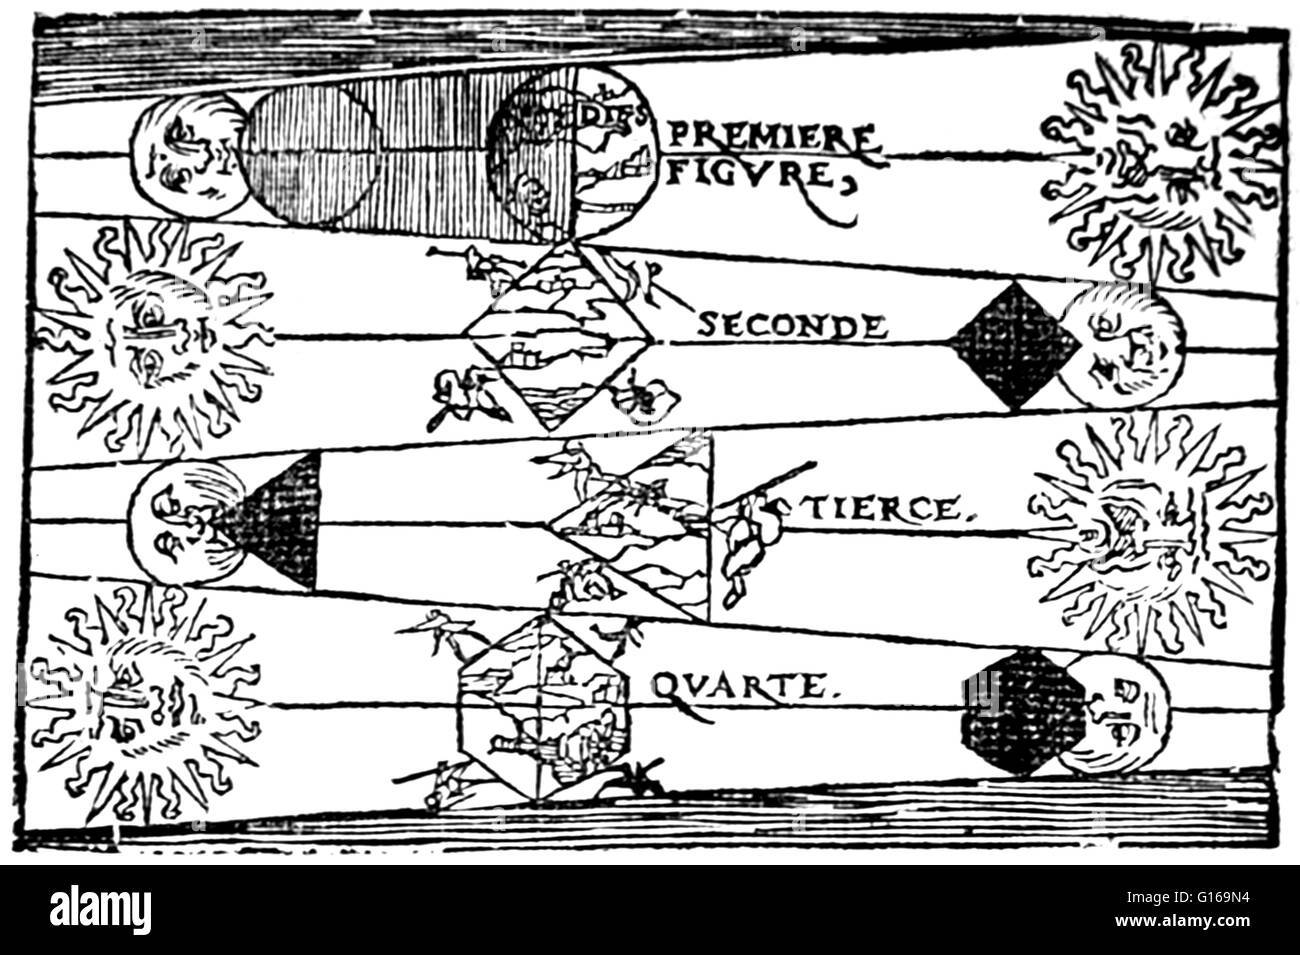 Illustrazione da Petrus Apiano', La cosmographie (1551) mostra la prova per la sfericità della Terra osservando la forma dell'ombra proiettata sulla luna durante un'eclisse lunare. Petrus Apiano (16 Aprile 1495 - 21 Aprile 1552) era un tedesco umanista, noto per le sue opere in matematica, astronomia e cartografia. Nel 1524 ha prodotto il suo Cosmographicus liber, un rispettato il lavoro di astronomia e di navigazione che era di vedere almeno trenta ristampe in 14 lingue. Nel 1527 ha pubblicato una variazione del triangolo di Pascal e nel 1534 una tabella di Sines. In 1531, ha osservato una cometa e ha scoperto che un co Foto Stock